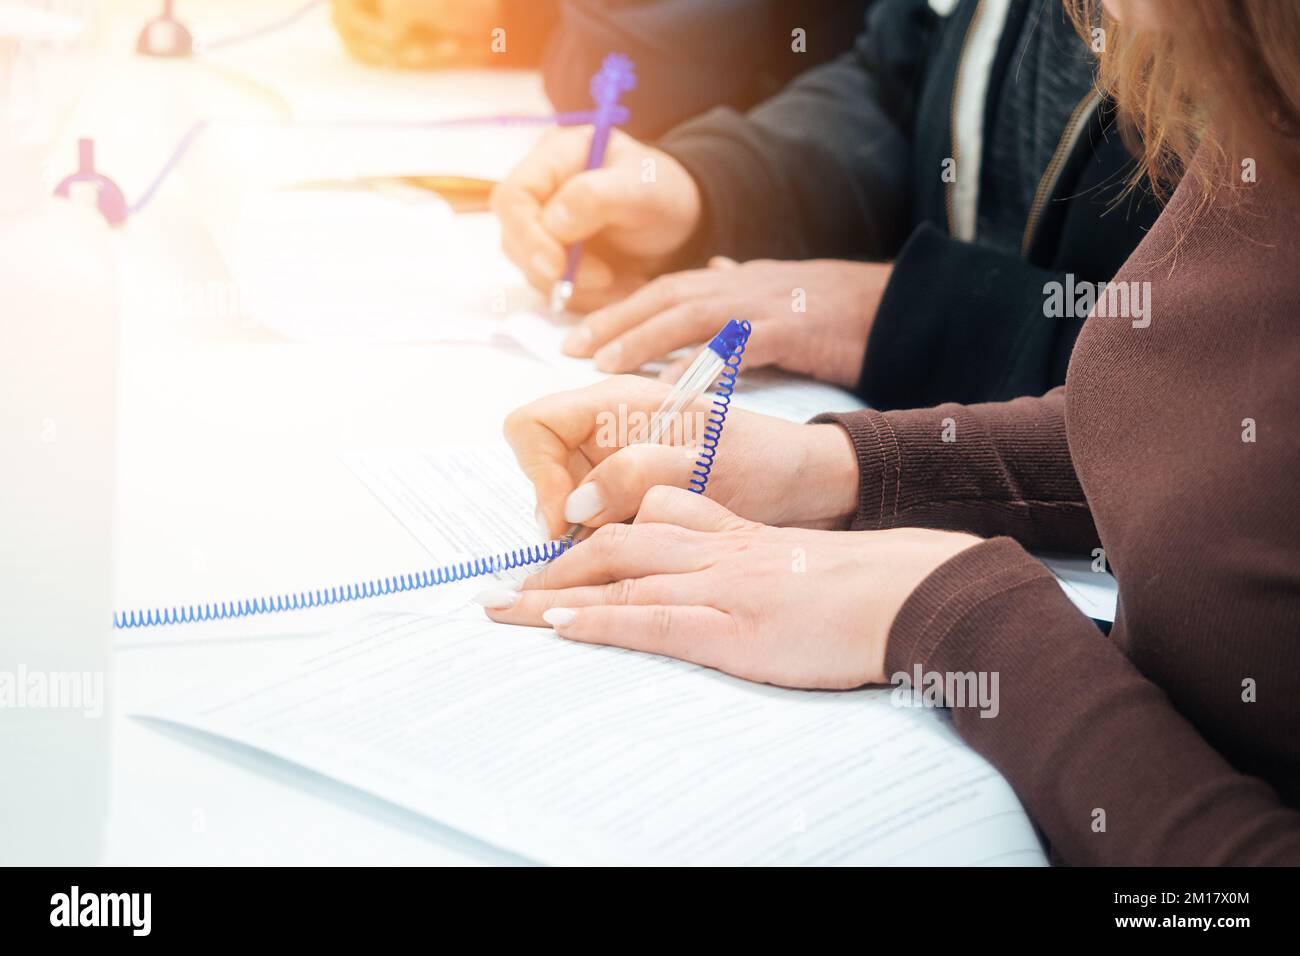 Frau füllt am Tisch ein leeres Bewerbungsformular aus oder unterzeichnet Vertrag. Hände von Menschen mit Nahaufnahme-Füllfederhalter. Perspektivische Ansicht mehrere Personen füllen Daten gleichzeitig mit einem Stift auf Papier aus. Stockfoto